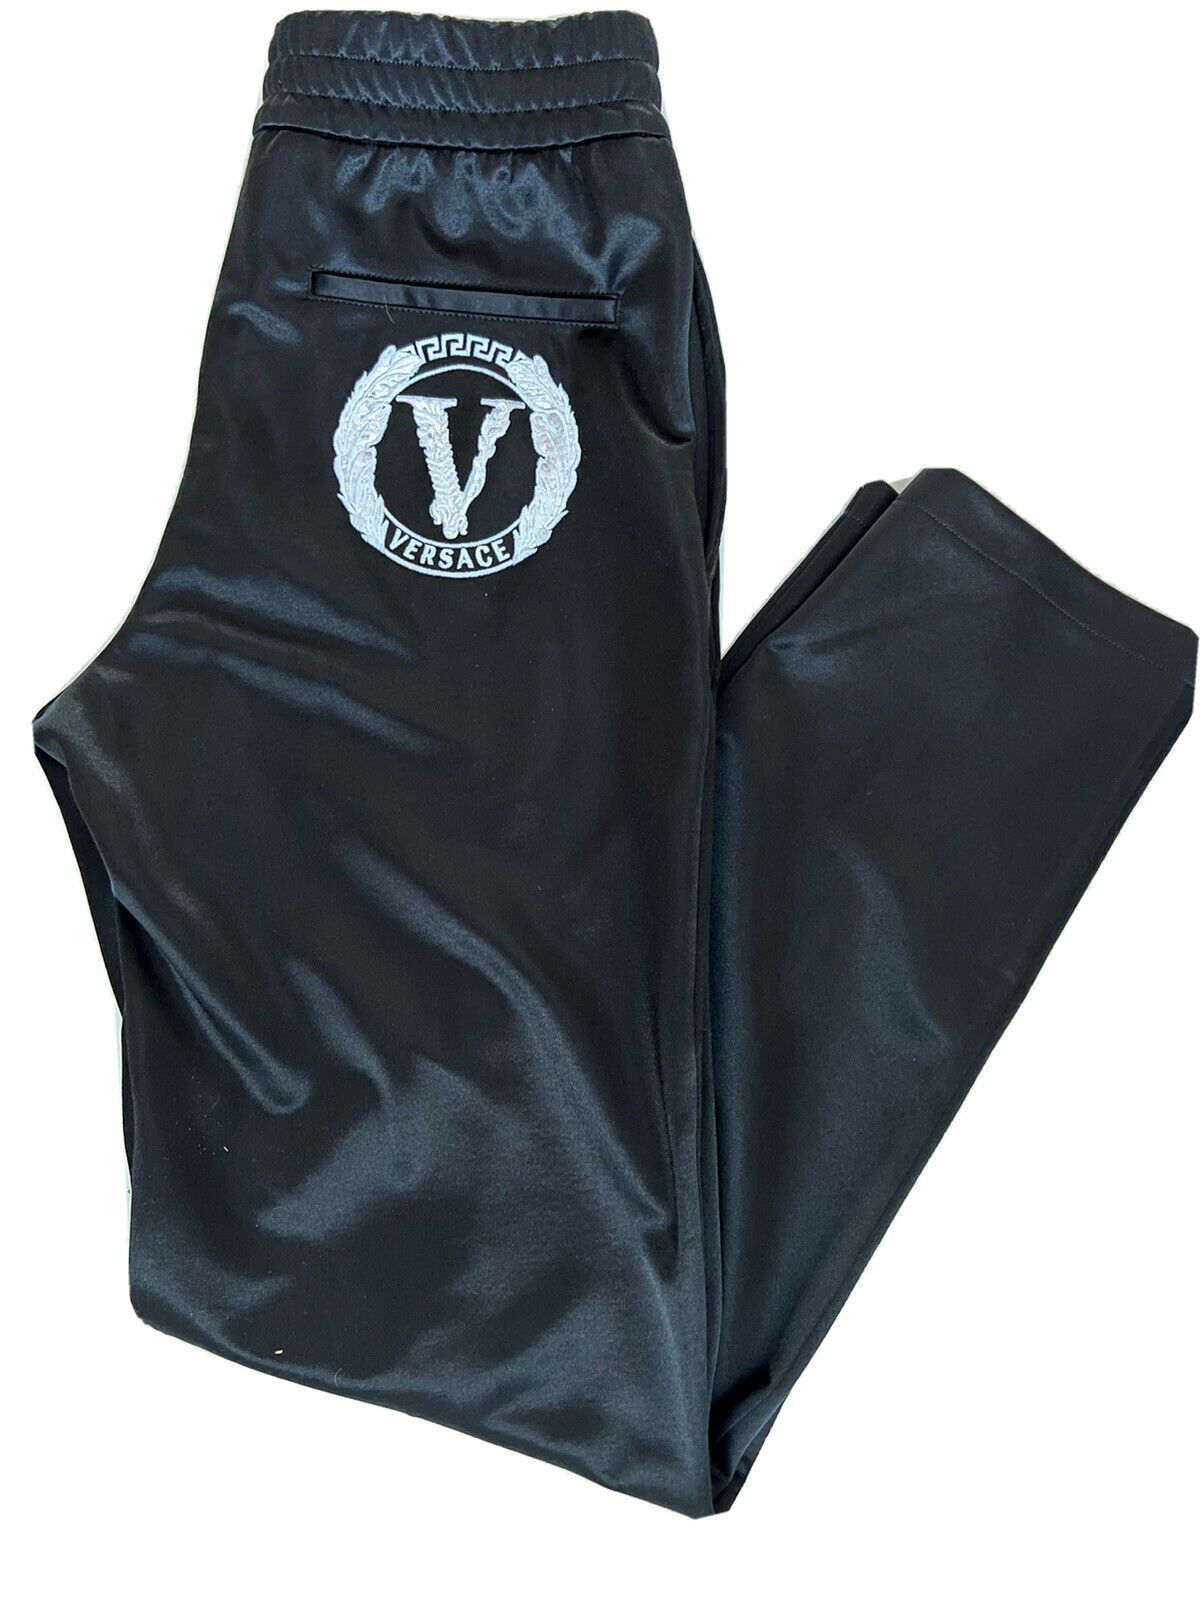 NWT $875 Versace Мужские черные брюки для спортивной одежды индивидуального кроя 3XL, сделано в Италии A88117